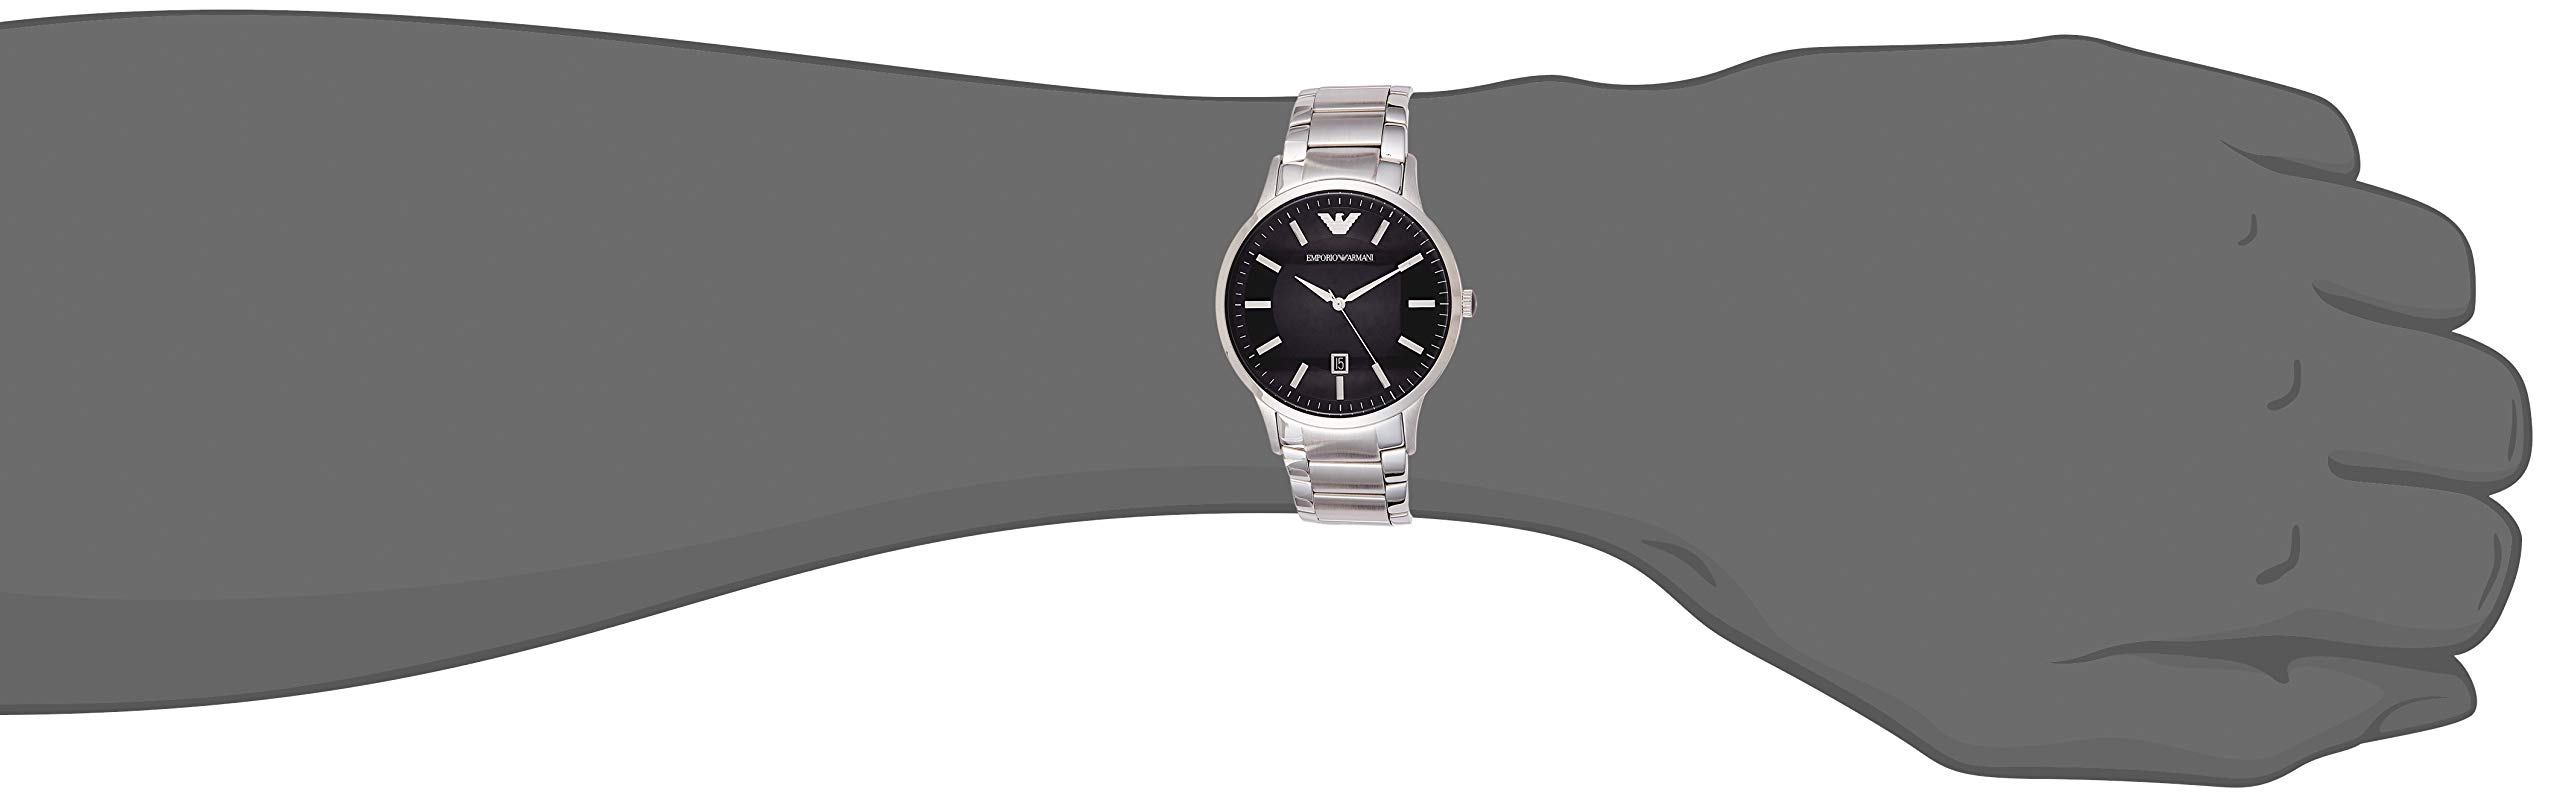 Emporio Armani Men's AR2457 Dress Silver Watch